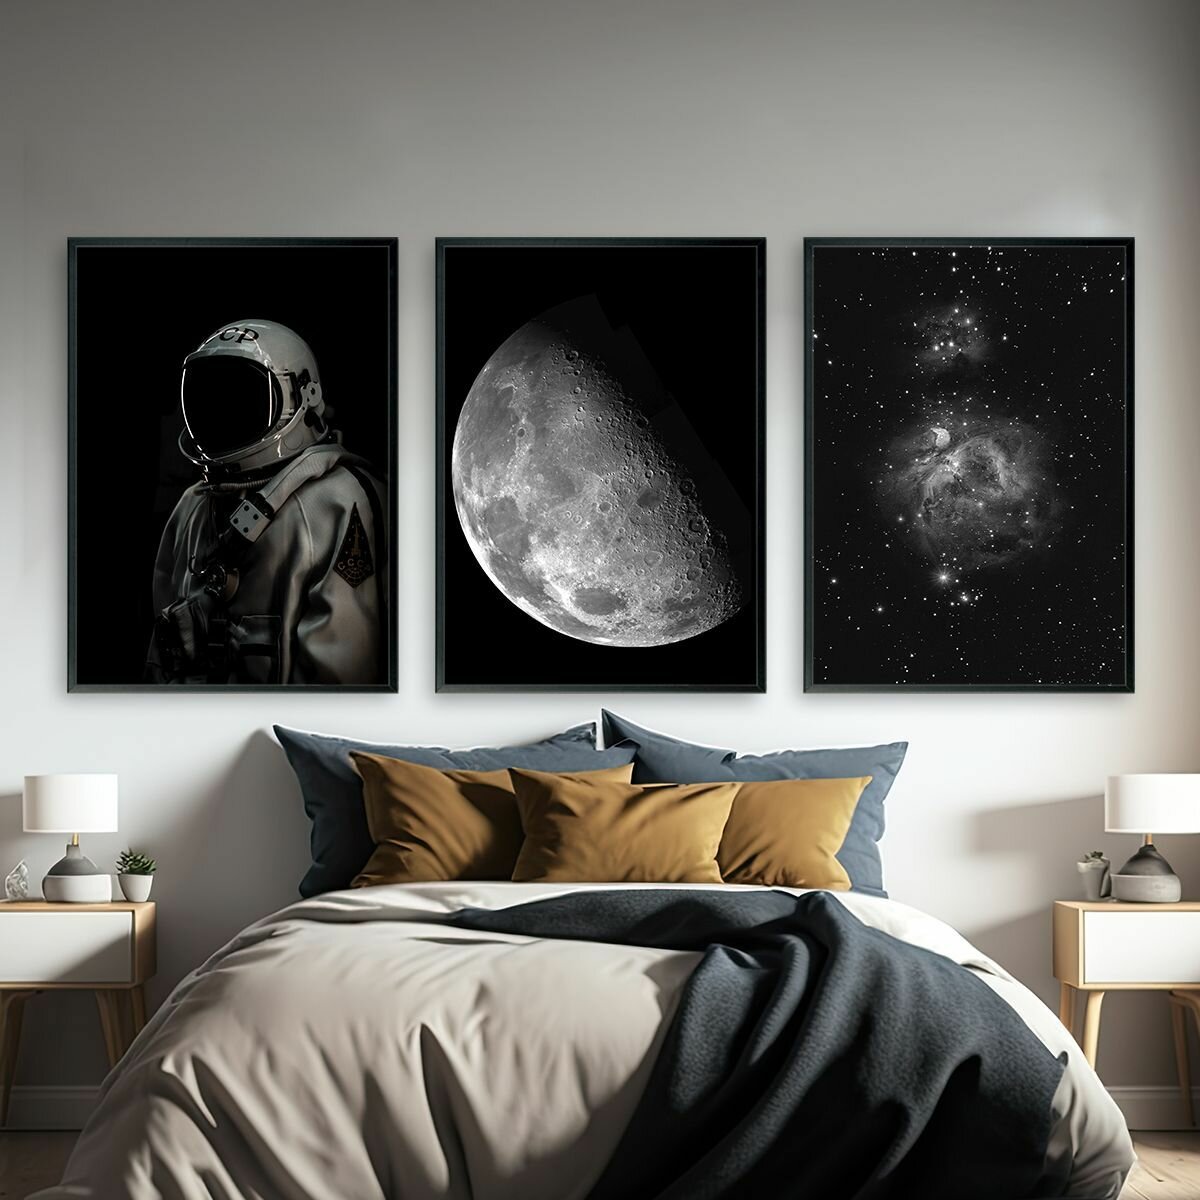 Постеры для интерьера "Космос", постеры на стену 30х40 см, 3 шт.